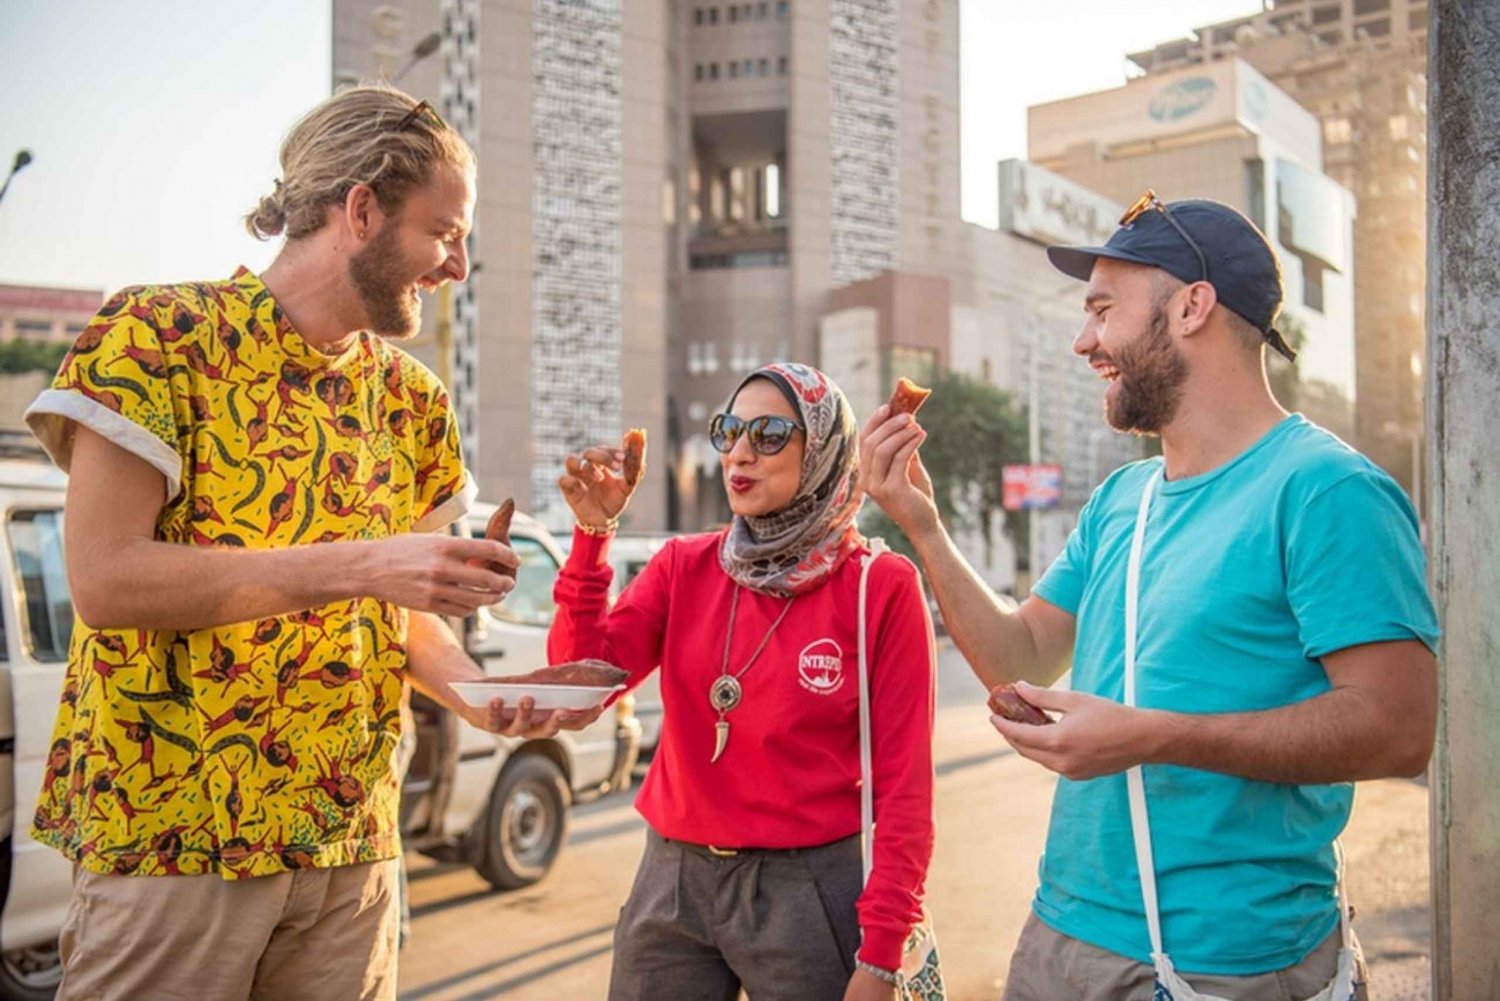 Cairo: passeio histórico a pé com local e jantar